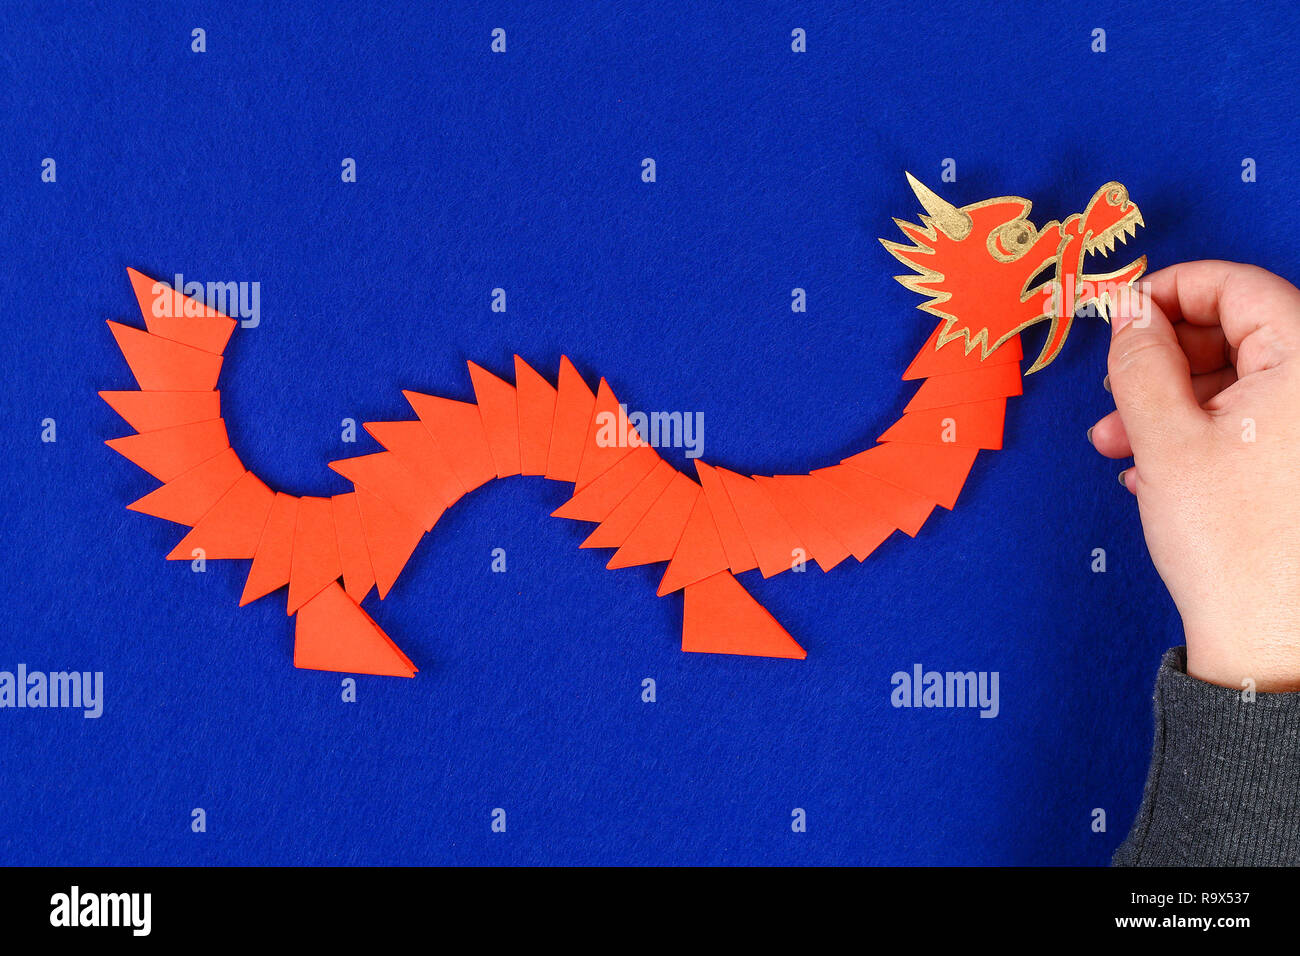 Diy chinesischer Drache auf blauem Hintergrund. Geschenkideen, die Einrichtung zum chinesischen Neujahrsfest. Handgefertigte rot gold Lunar dragon Lion von modular Origami. Schritt für Schritt. Die Stockfoto